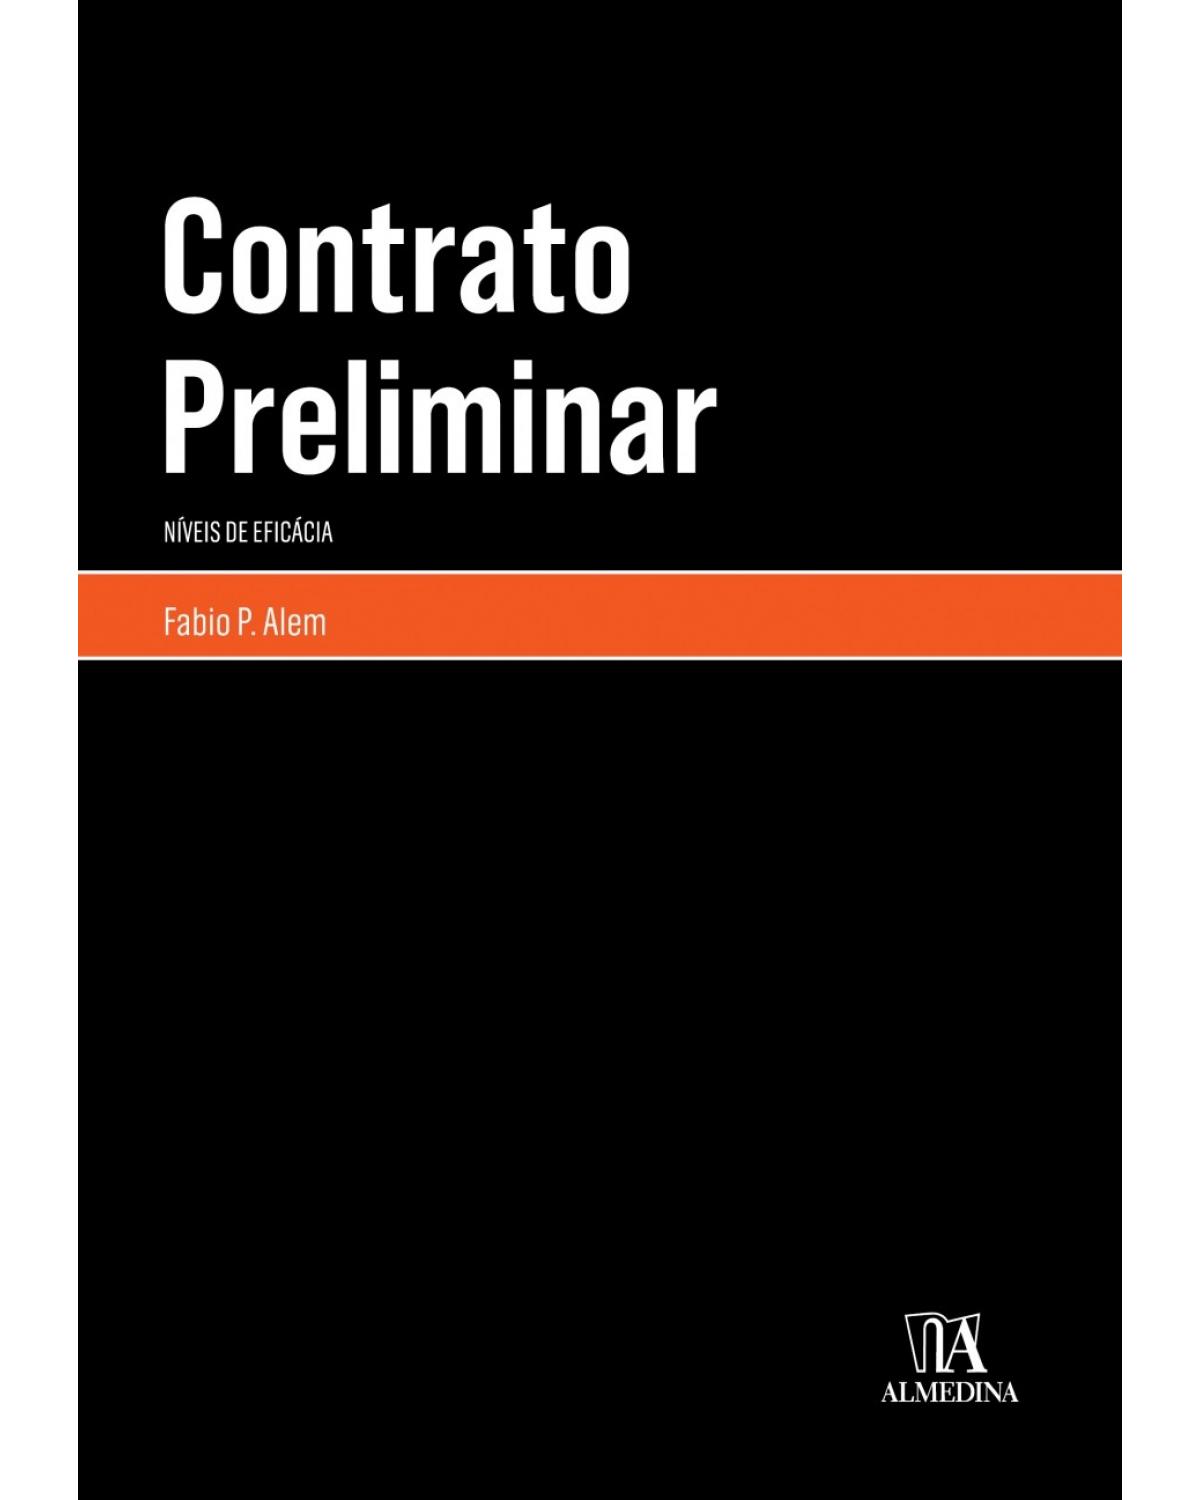 Contrato preliminar - níveis de eficácia - 1ª Edição | 2018